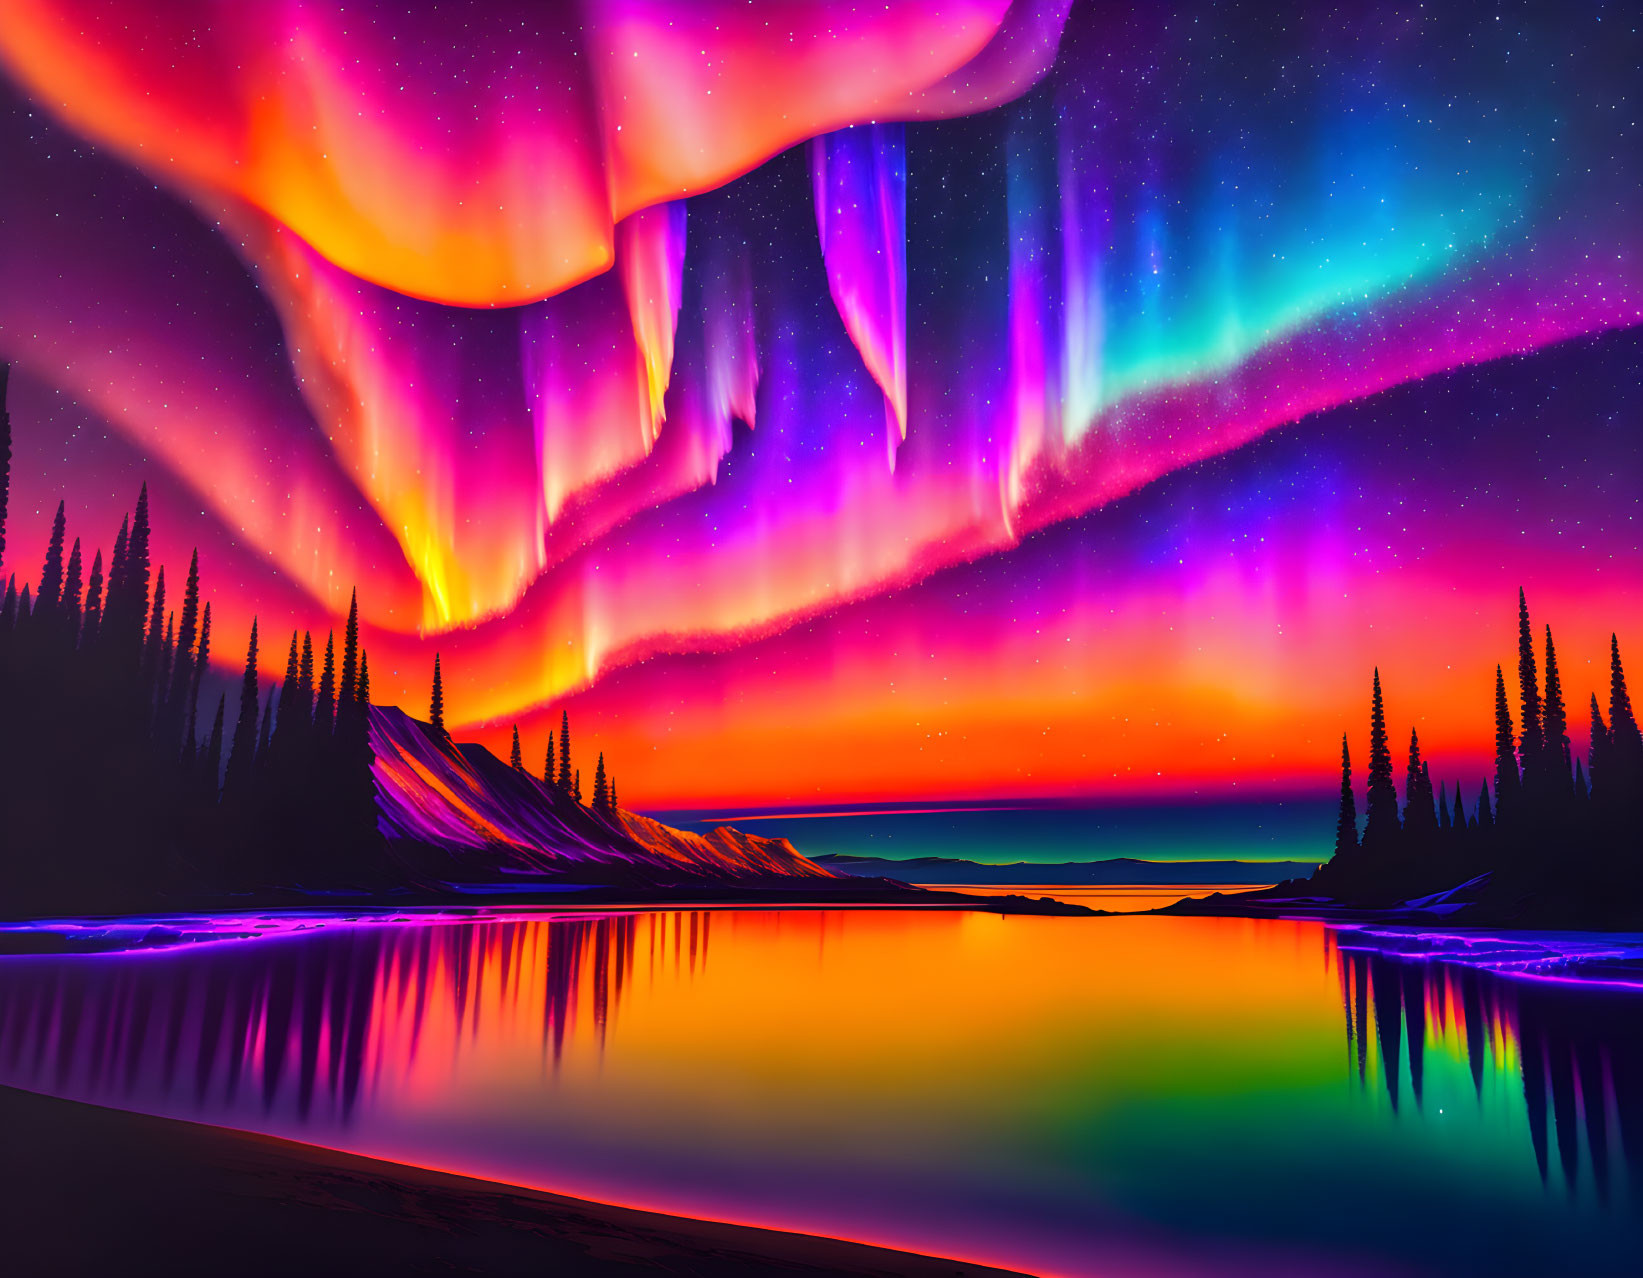 Stunning aurora borealis over a sunset